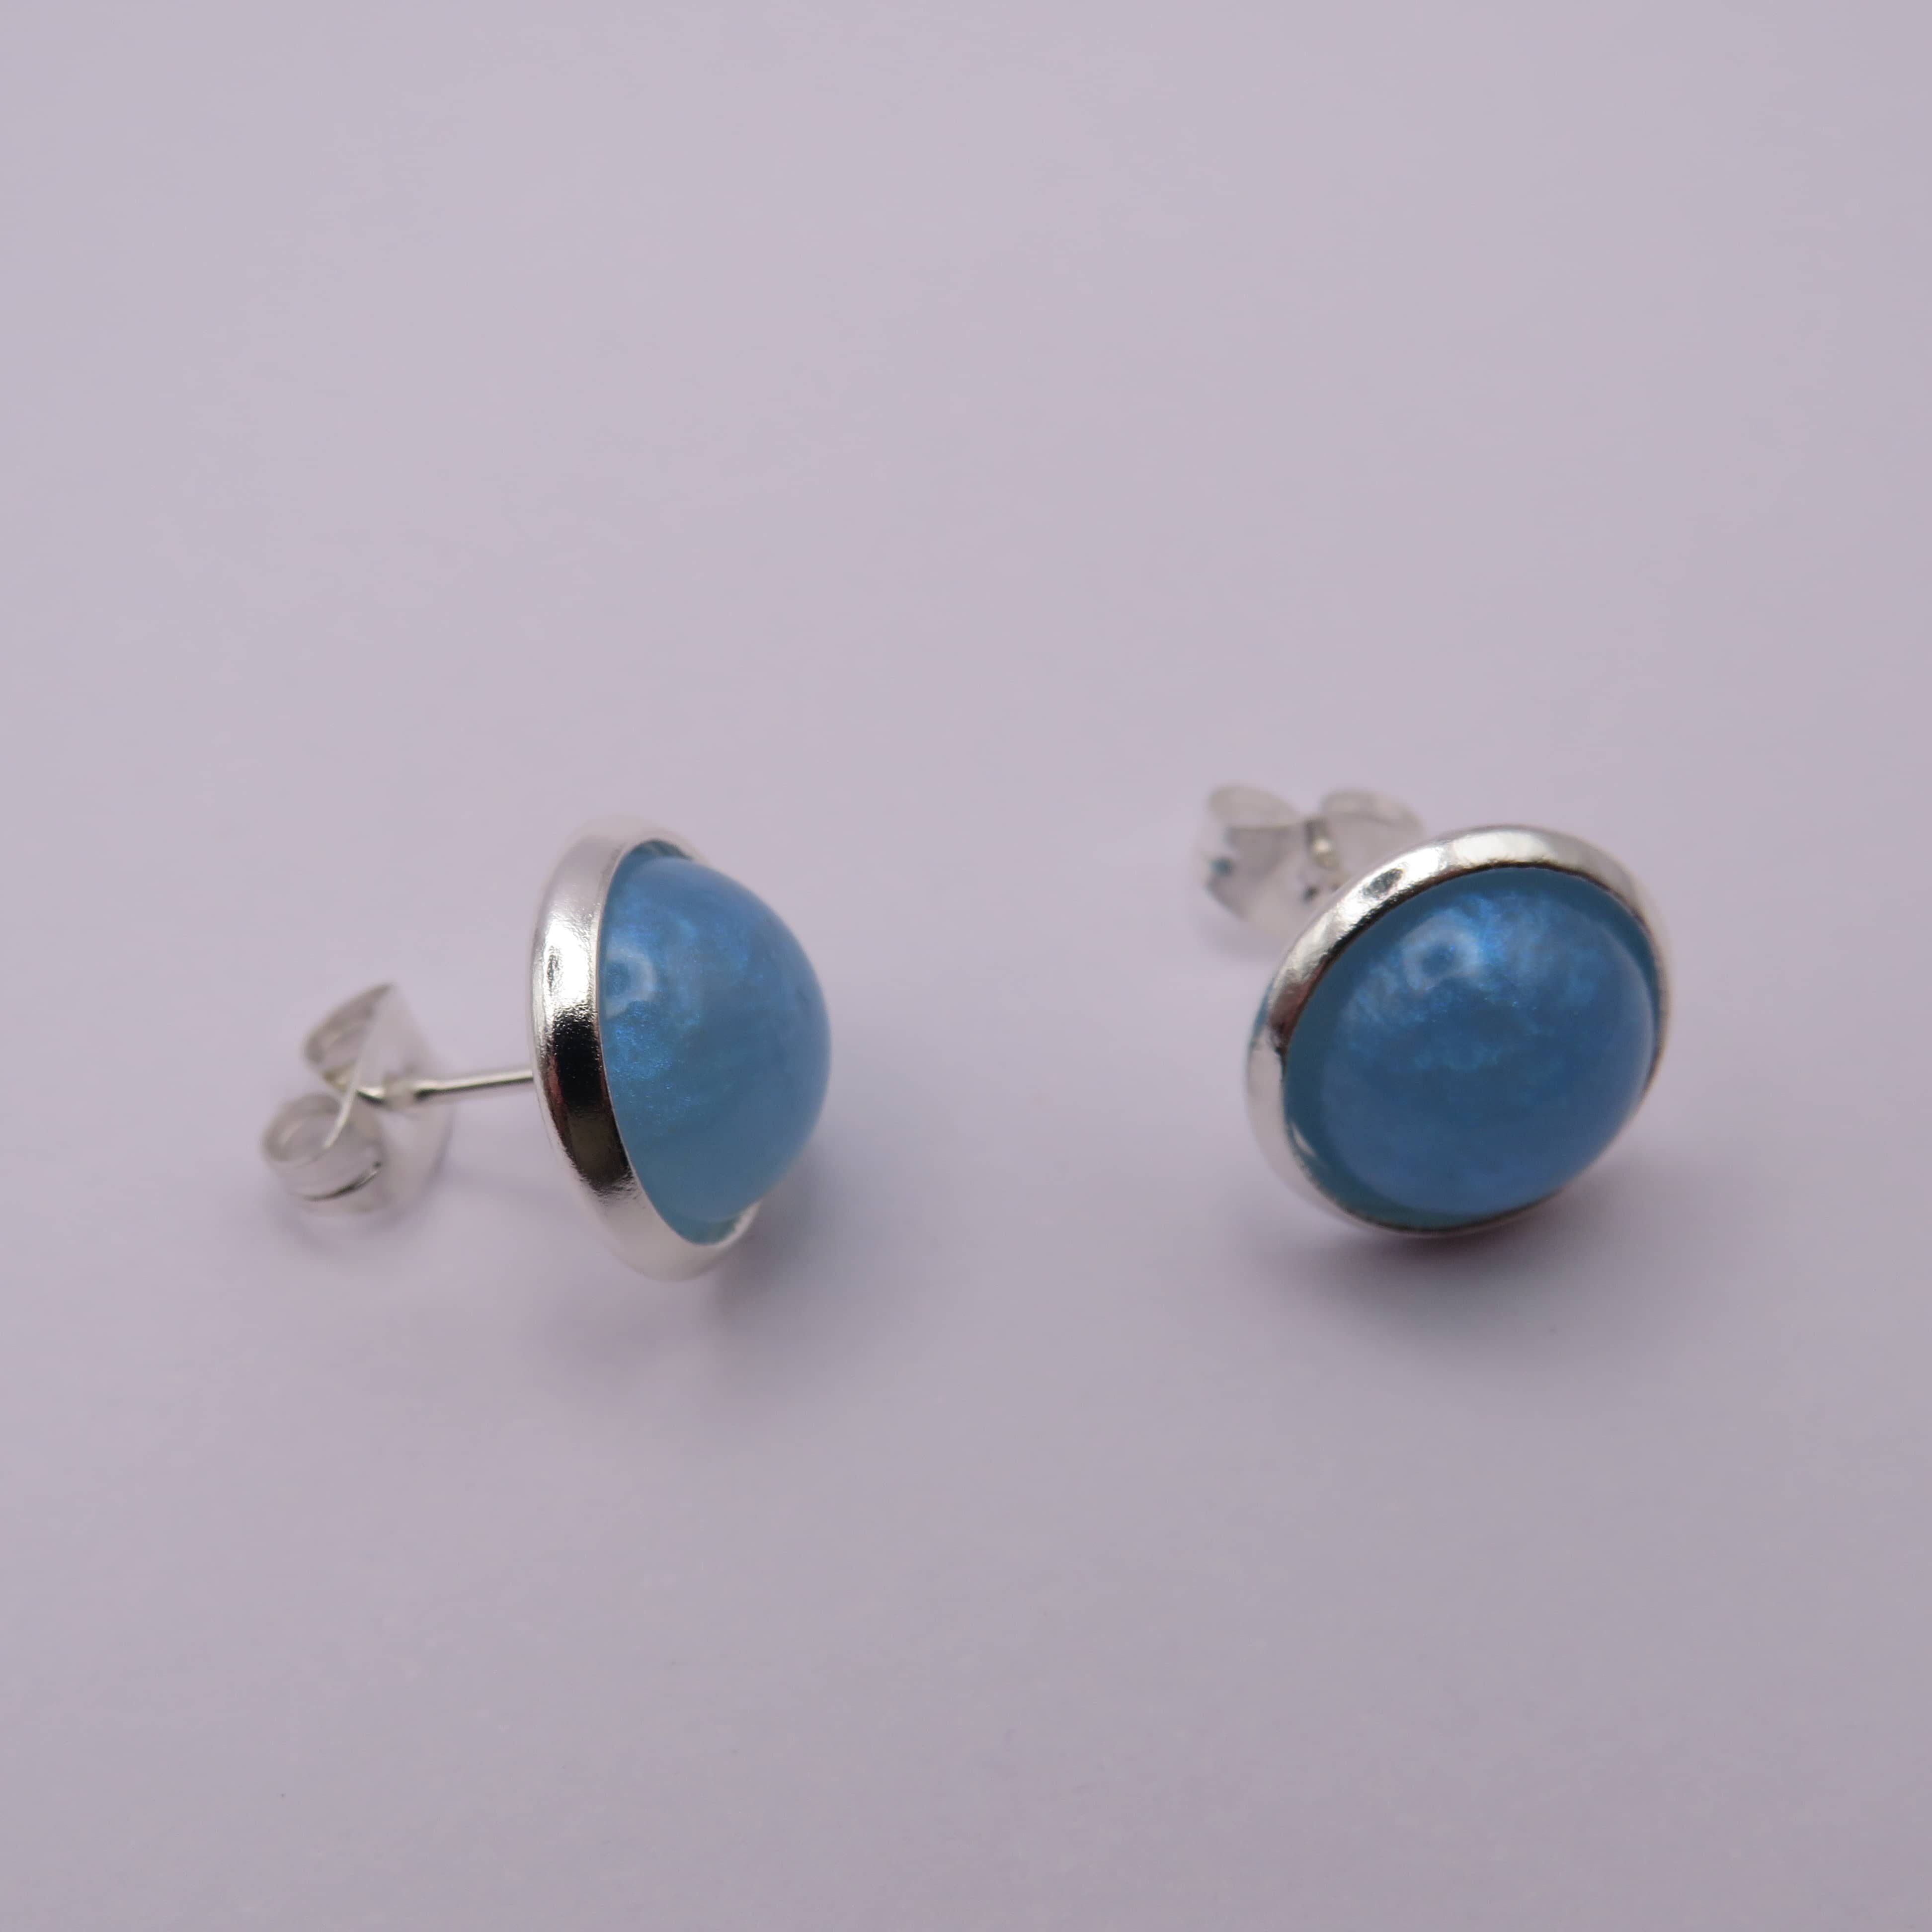 Stainless Steel Ocean Blue Cabochon Stud Earrings